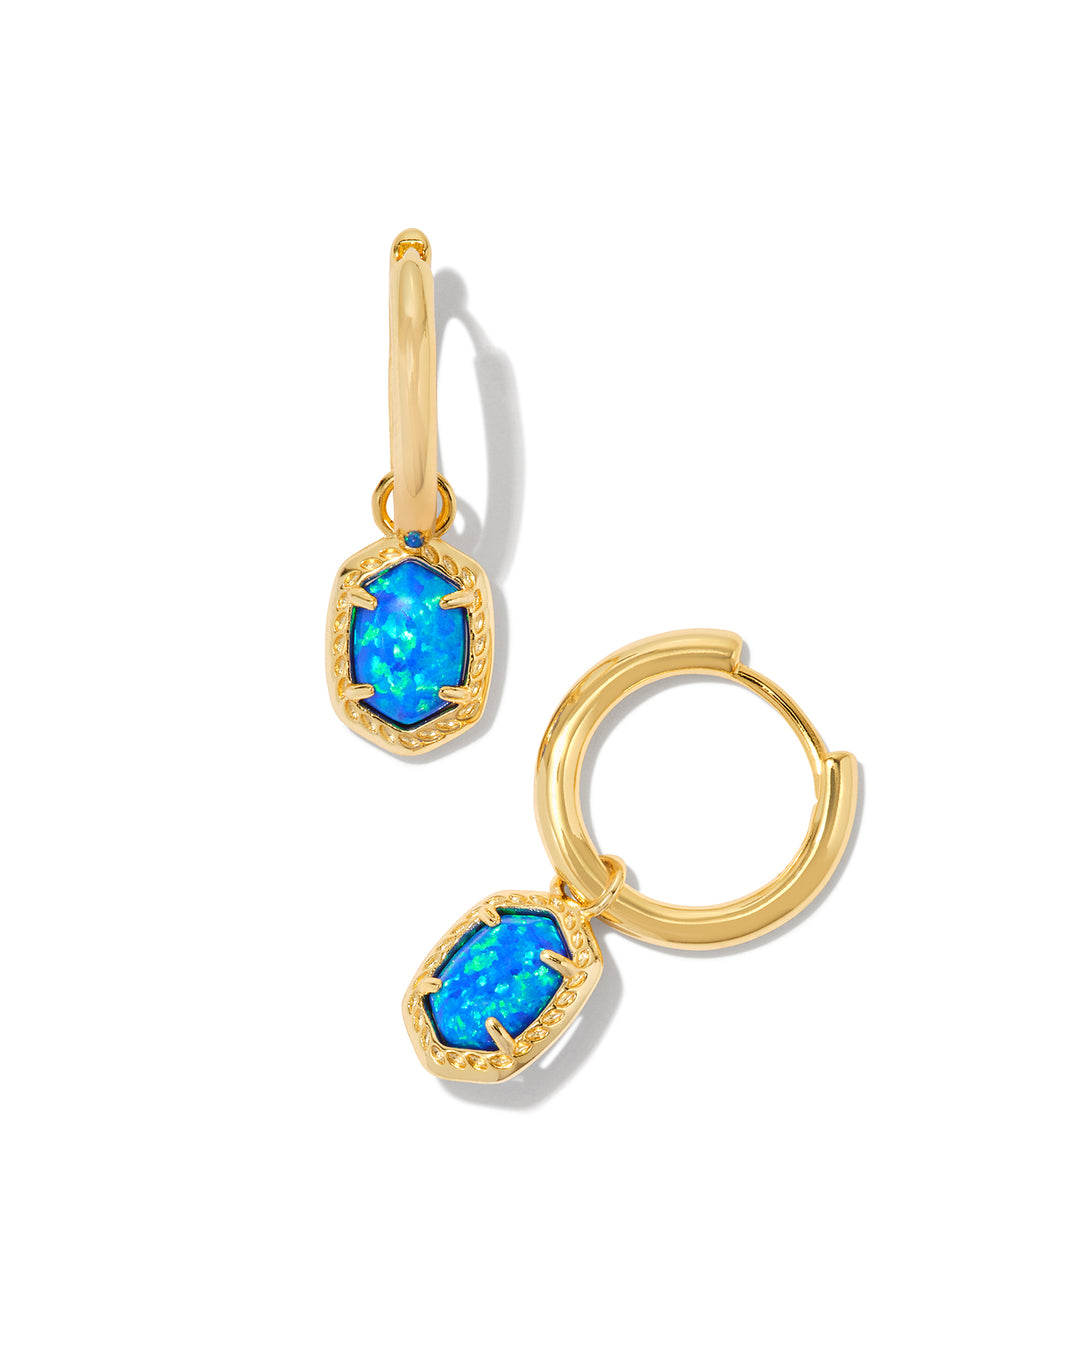 Kendra Scott Daphne Framed Huggie Earring Bright Blue Opal in Gold